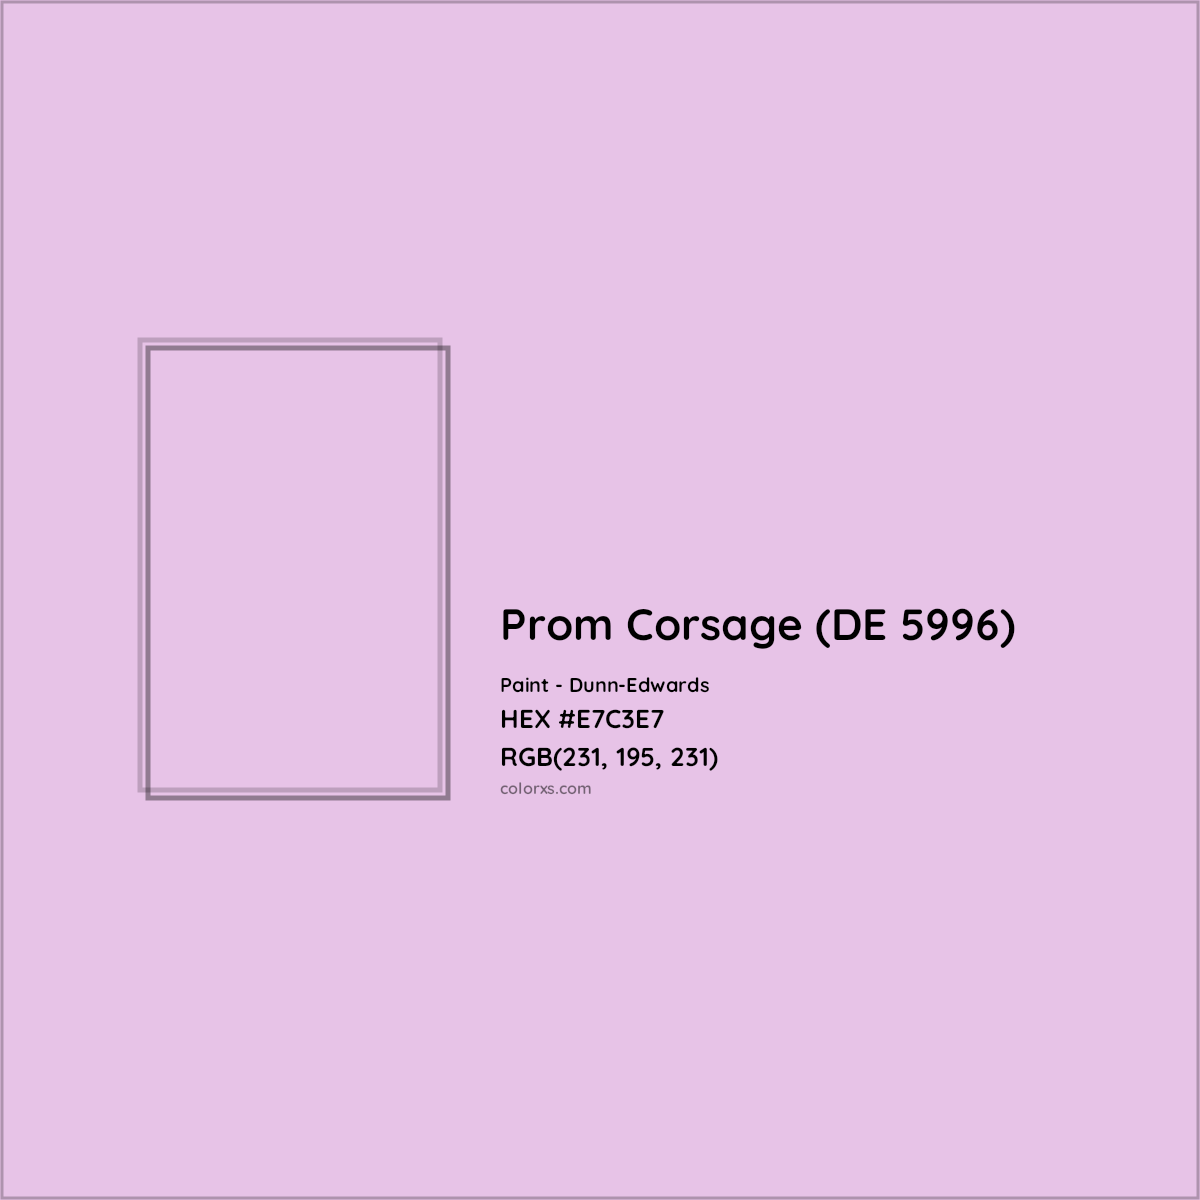 HEX #E7C3E7 Prom Corsage (DE 5996) Paint Dunn-Edwards - Color Code